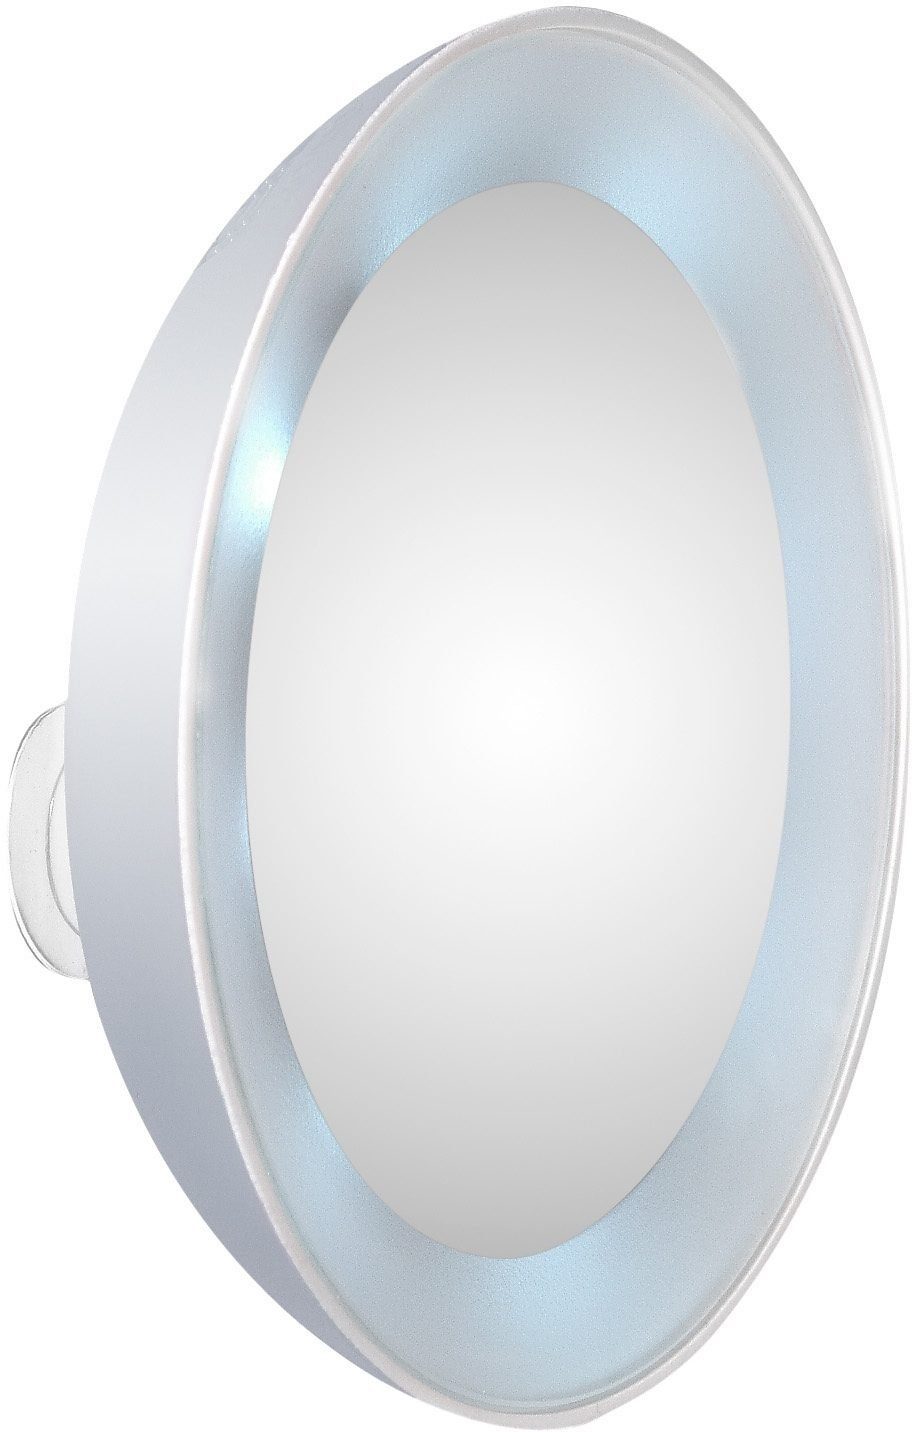 Vergrößerung TWEEZERMAN Kosmetikspiegel, Schminkspiegel LED-Beleuchtung, 15-fach mit